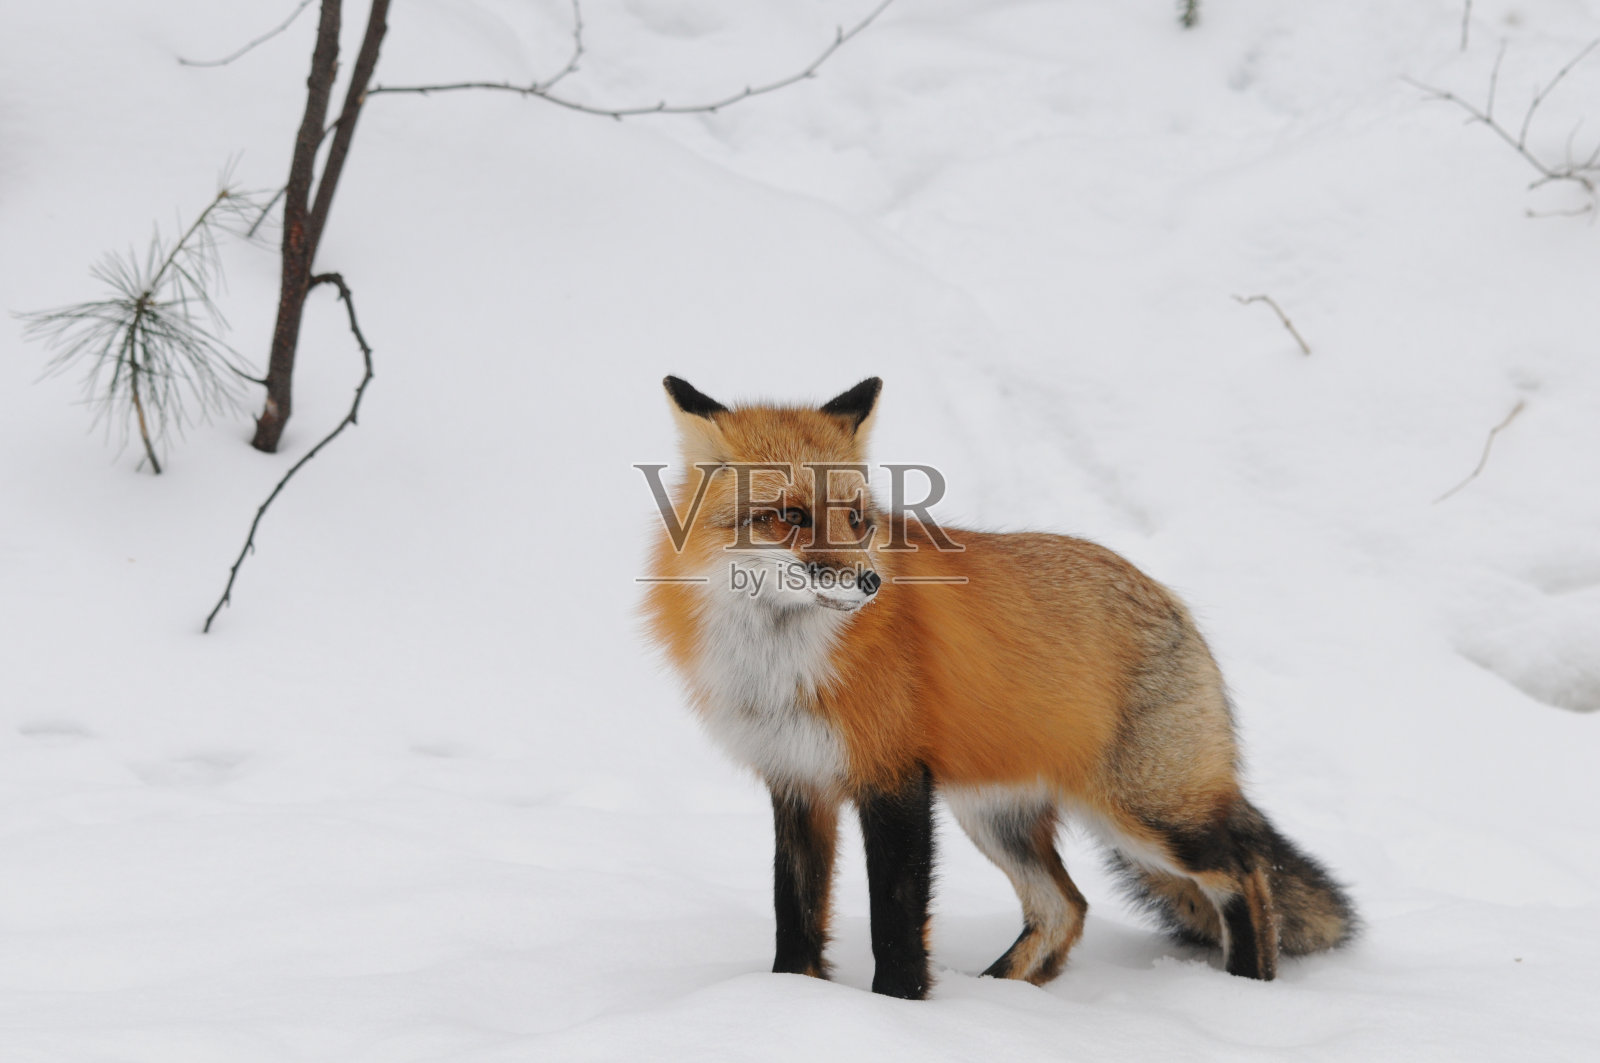 红狐特写特写在冬季的环境和栖息地中以雪为背景展示浓密的狐狸尾巴、皮毛和向右侧看。狐狸的形象。福克斯肖像。福克斯的画面。狐狸库存图片。照片摄影图片